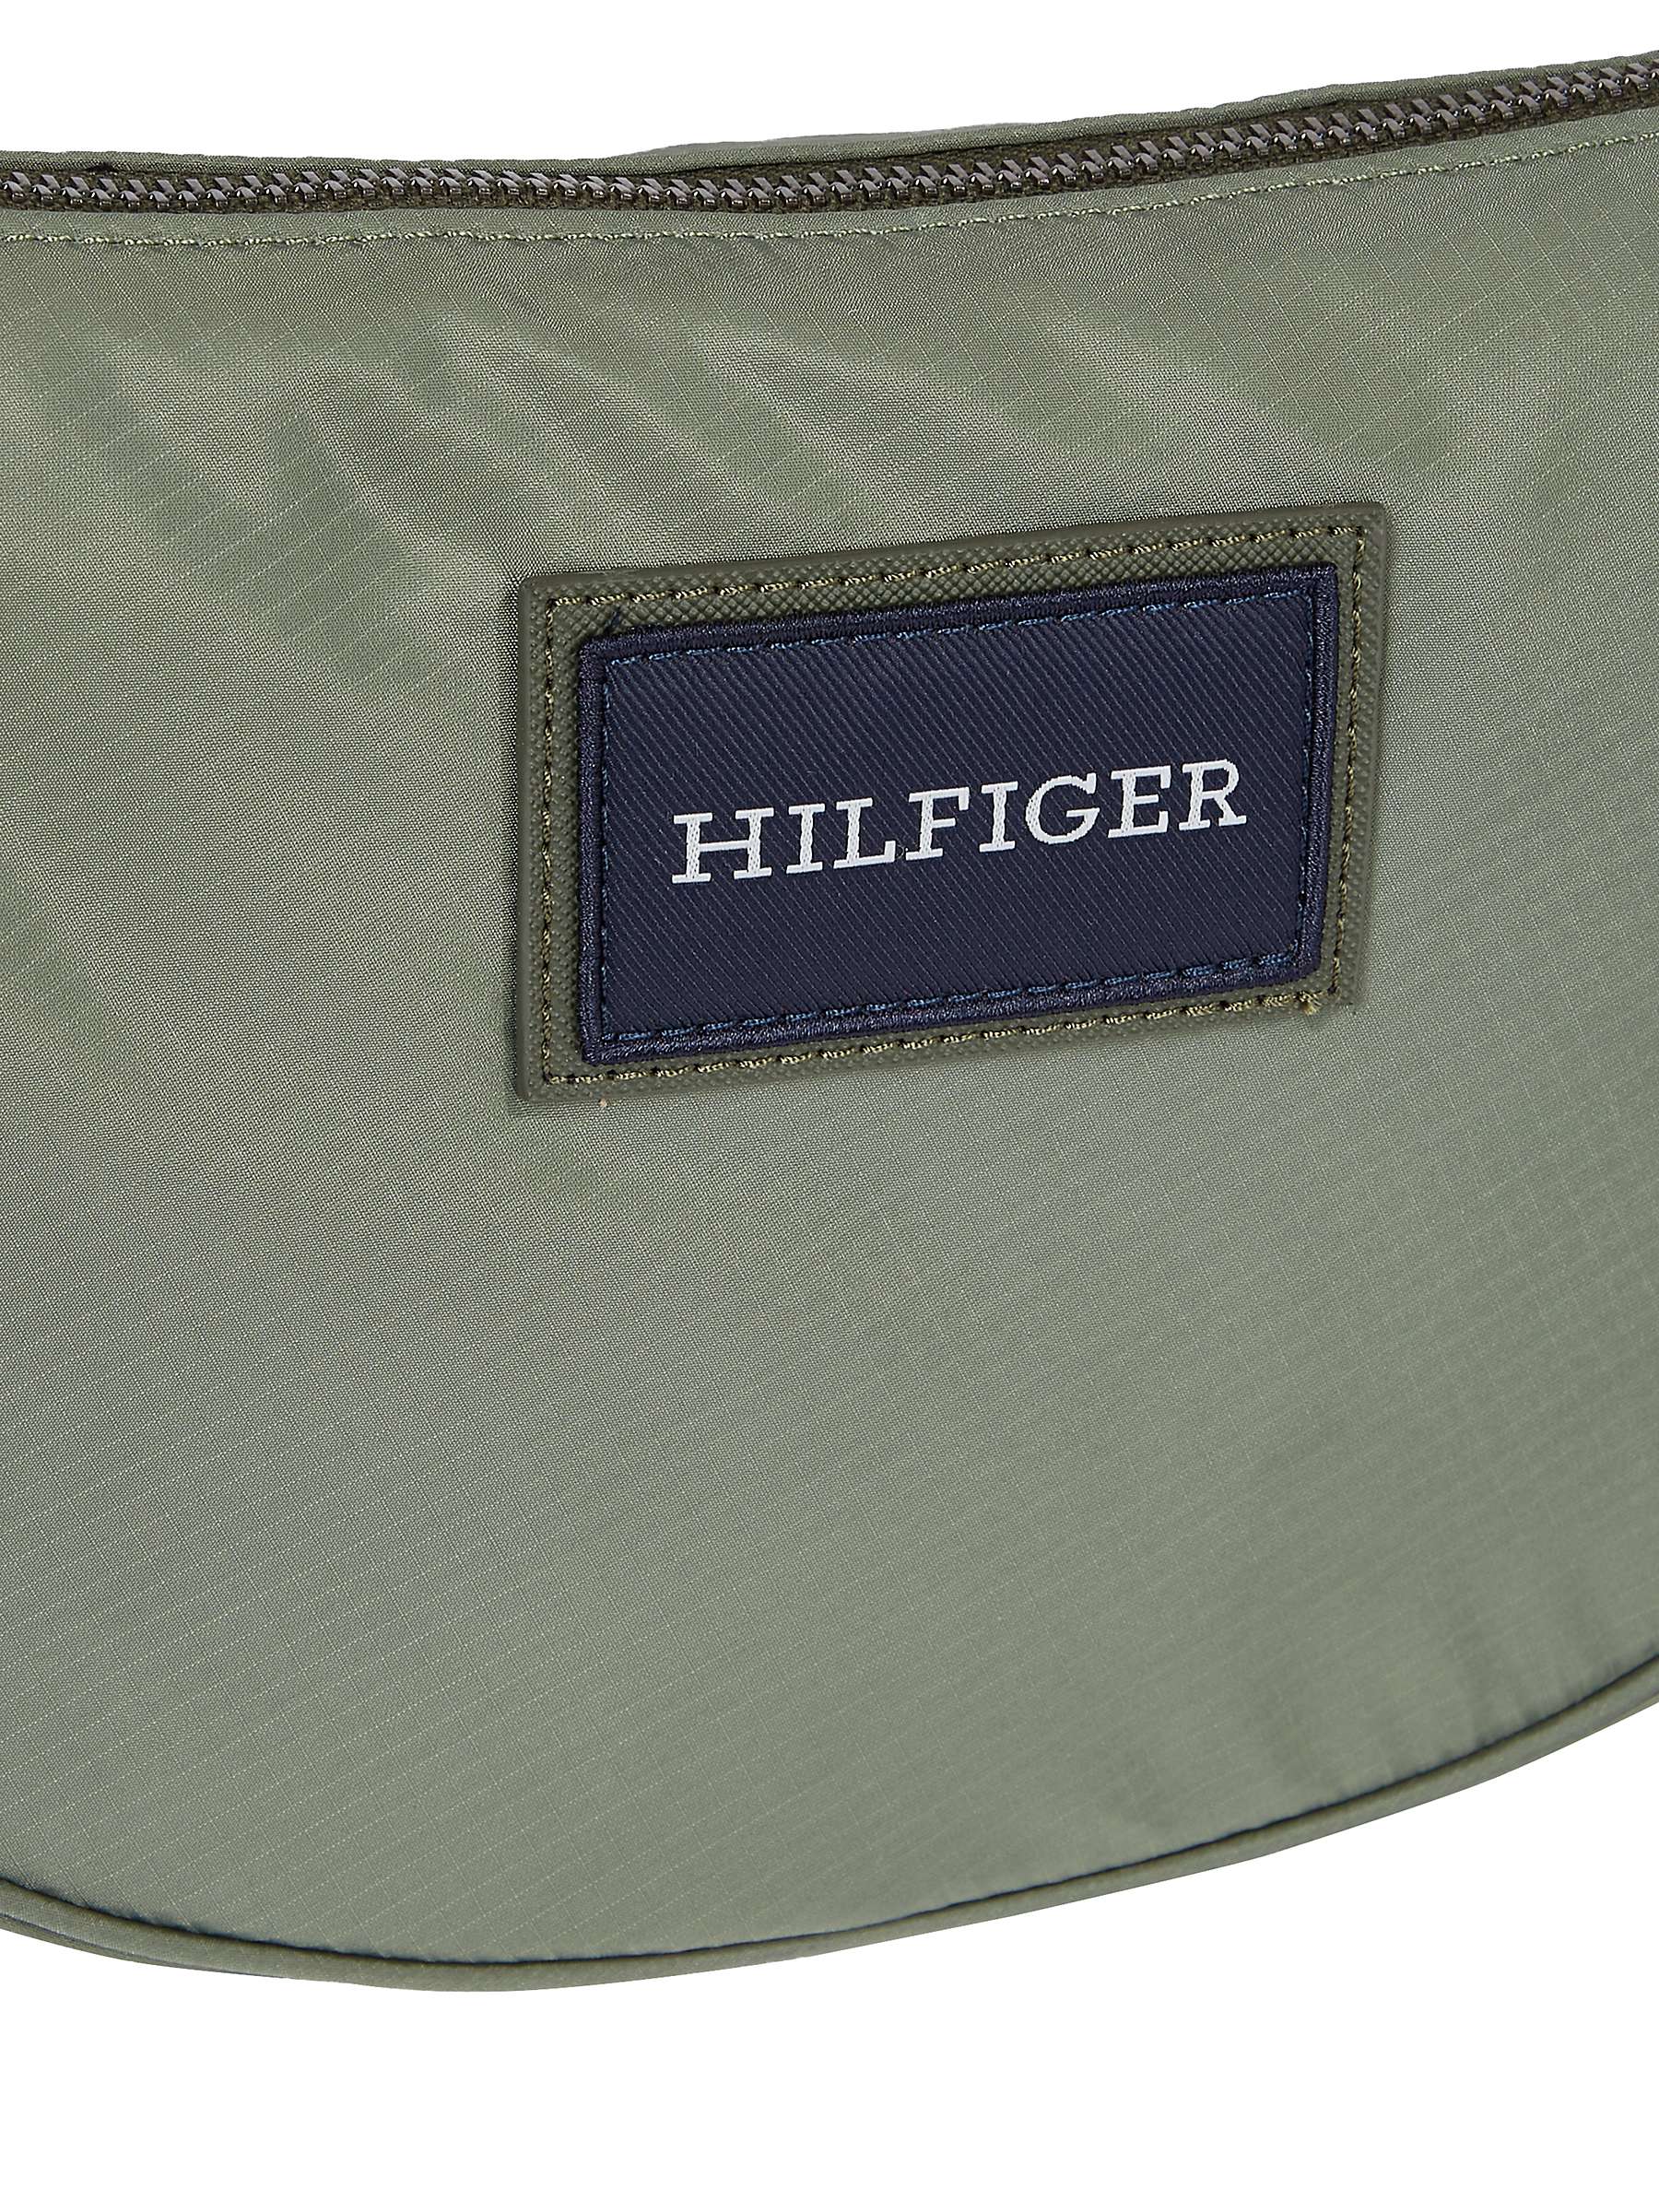 Buy Tommy Hilfiger Crescent Crossover Bag, Green Acres Online at johnlewis.com